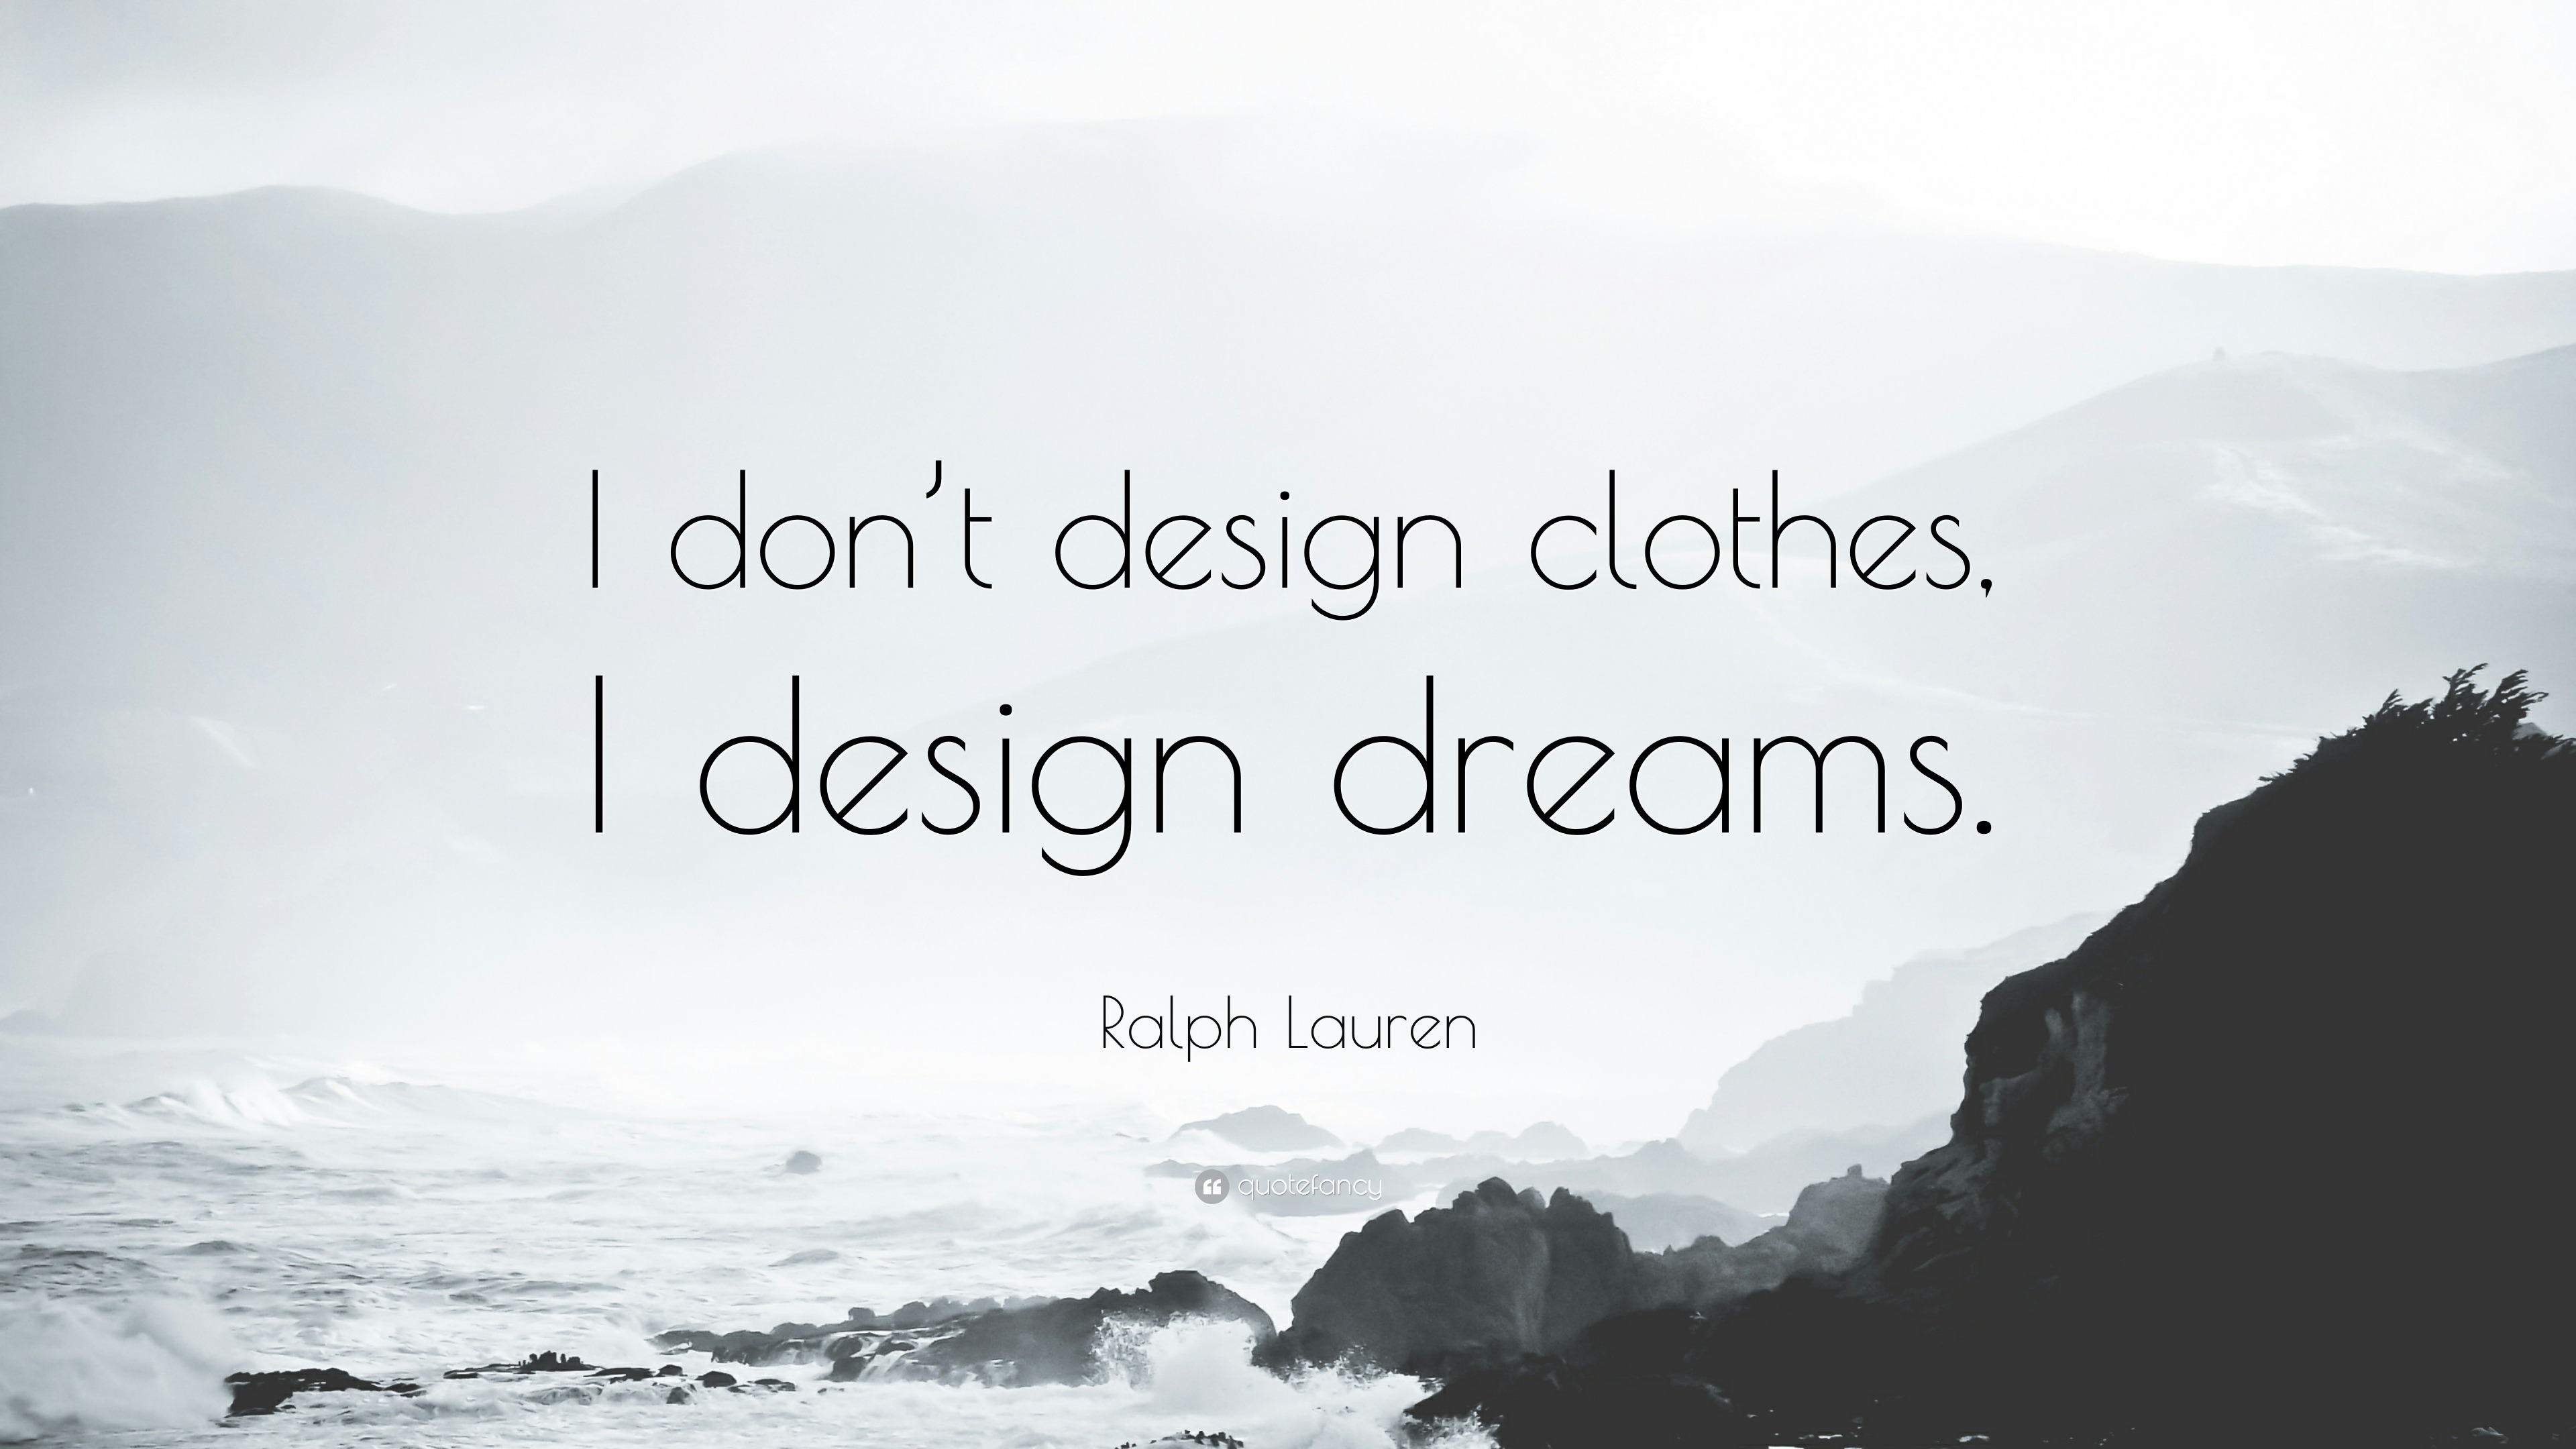 fashion design quote